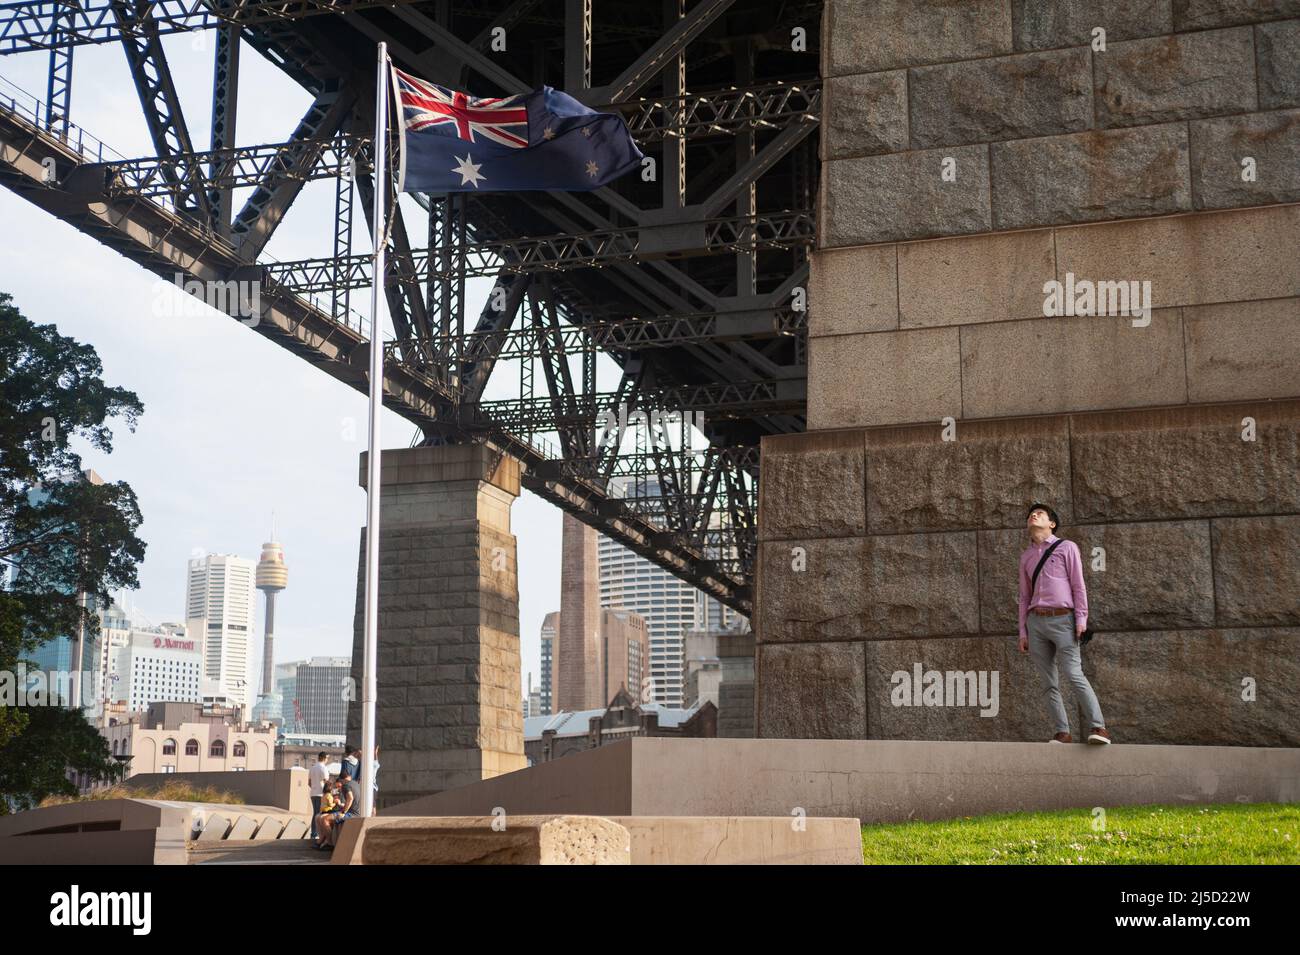 21. September 2019, Sydney, New South Wales, Australien - Ein Mann steht neben einer winkenden australischen Flagge unter der Sydney Harbour Bridge mit der Skyline des Geschäftsviertels und dem Sydney Tower im Hintergrund. [Automatisierte Übersetzung] Stockfoto